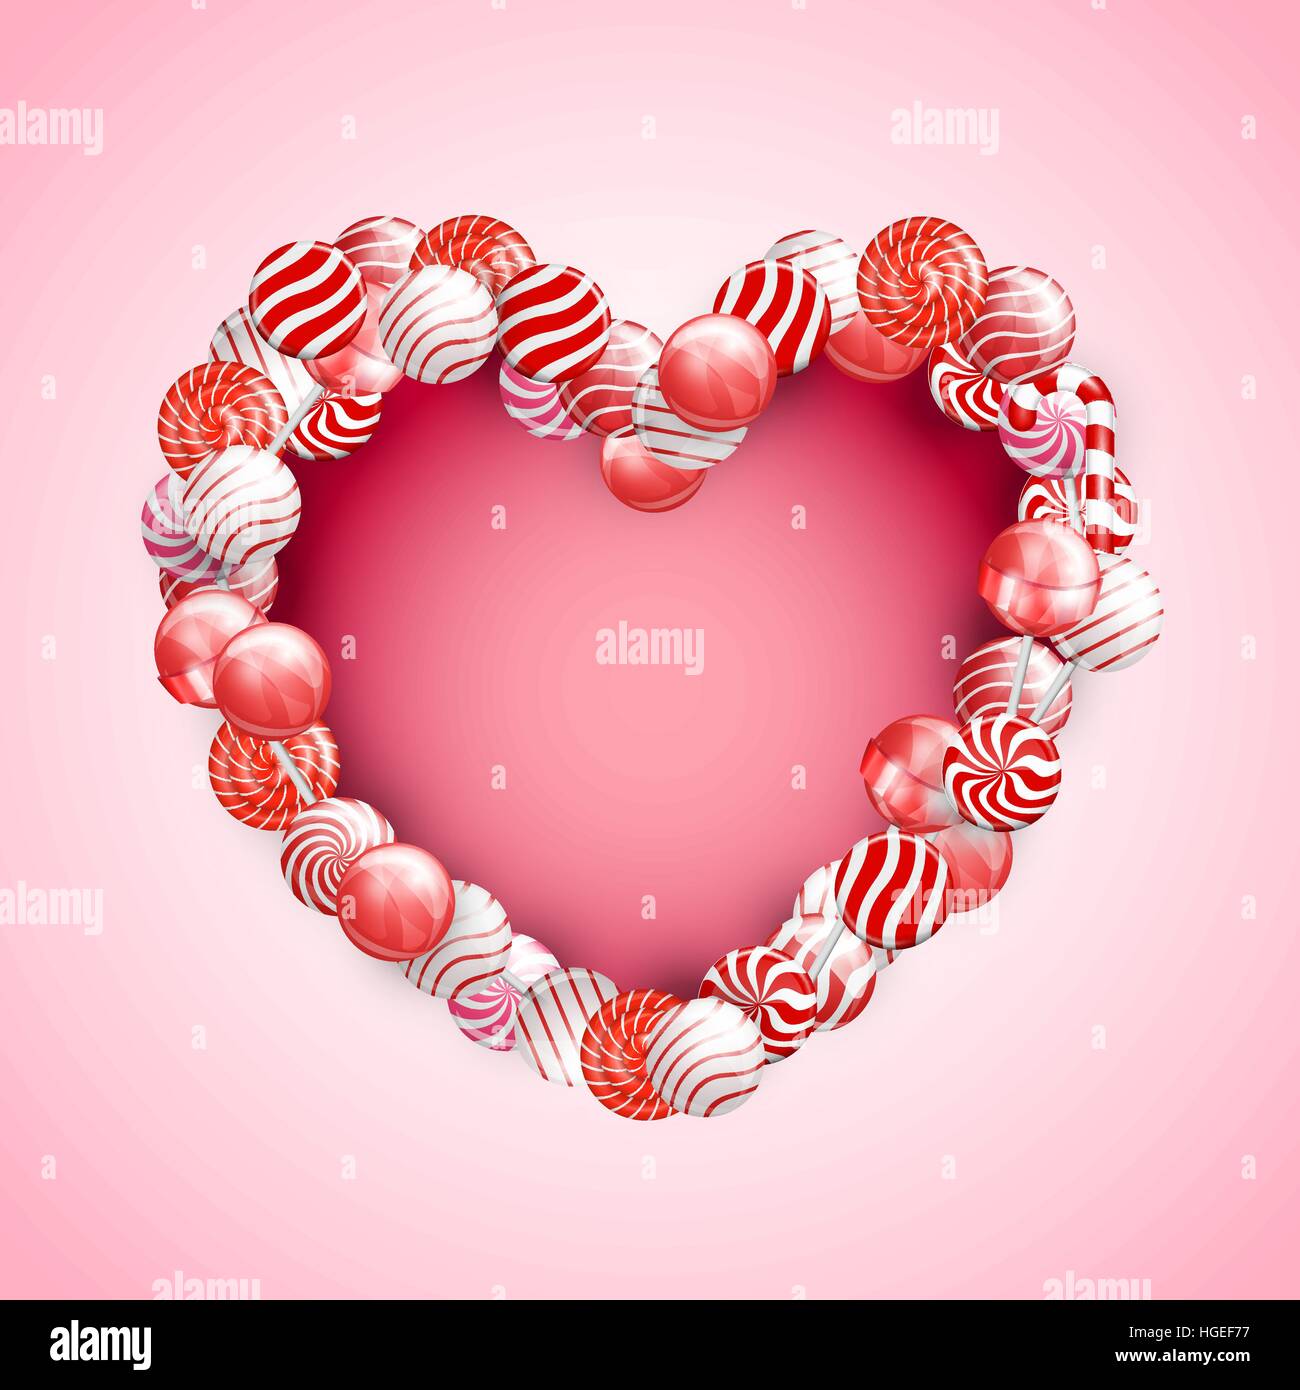 Caramelle di San Valentino fotografia stock. Immagine di felice - 47280490